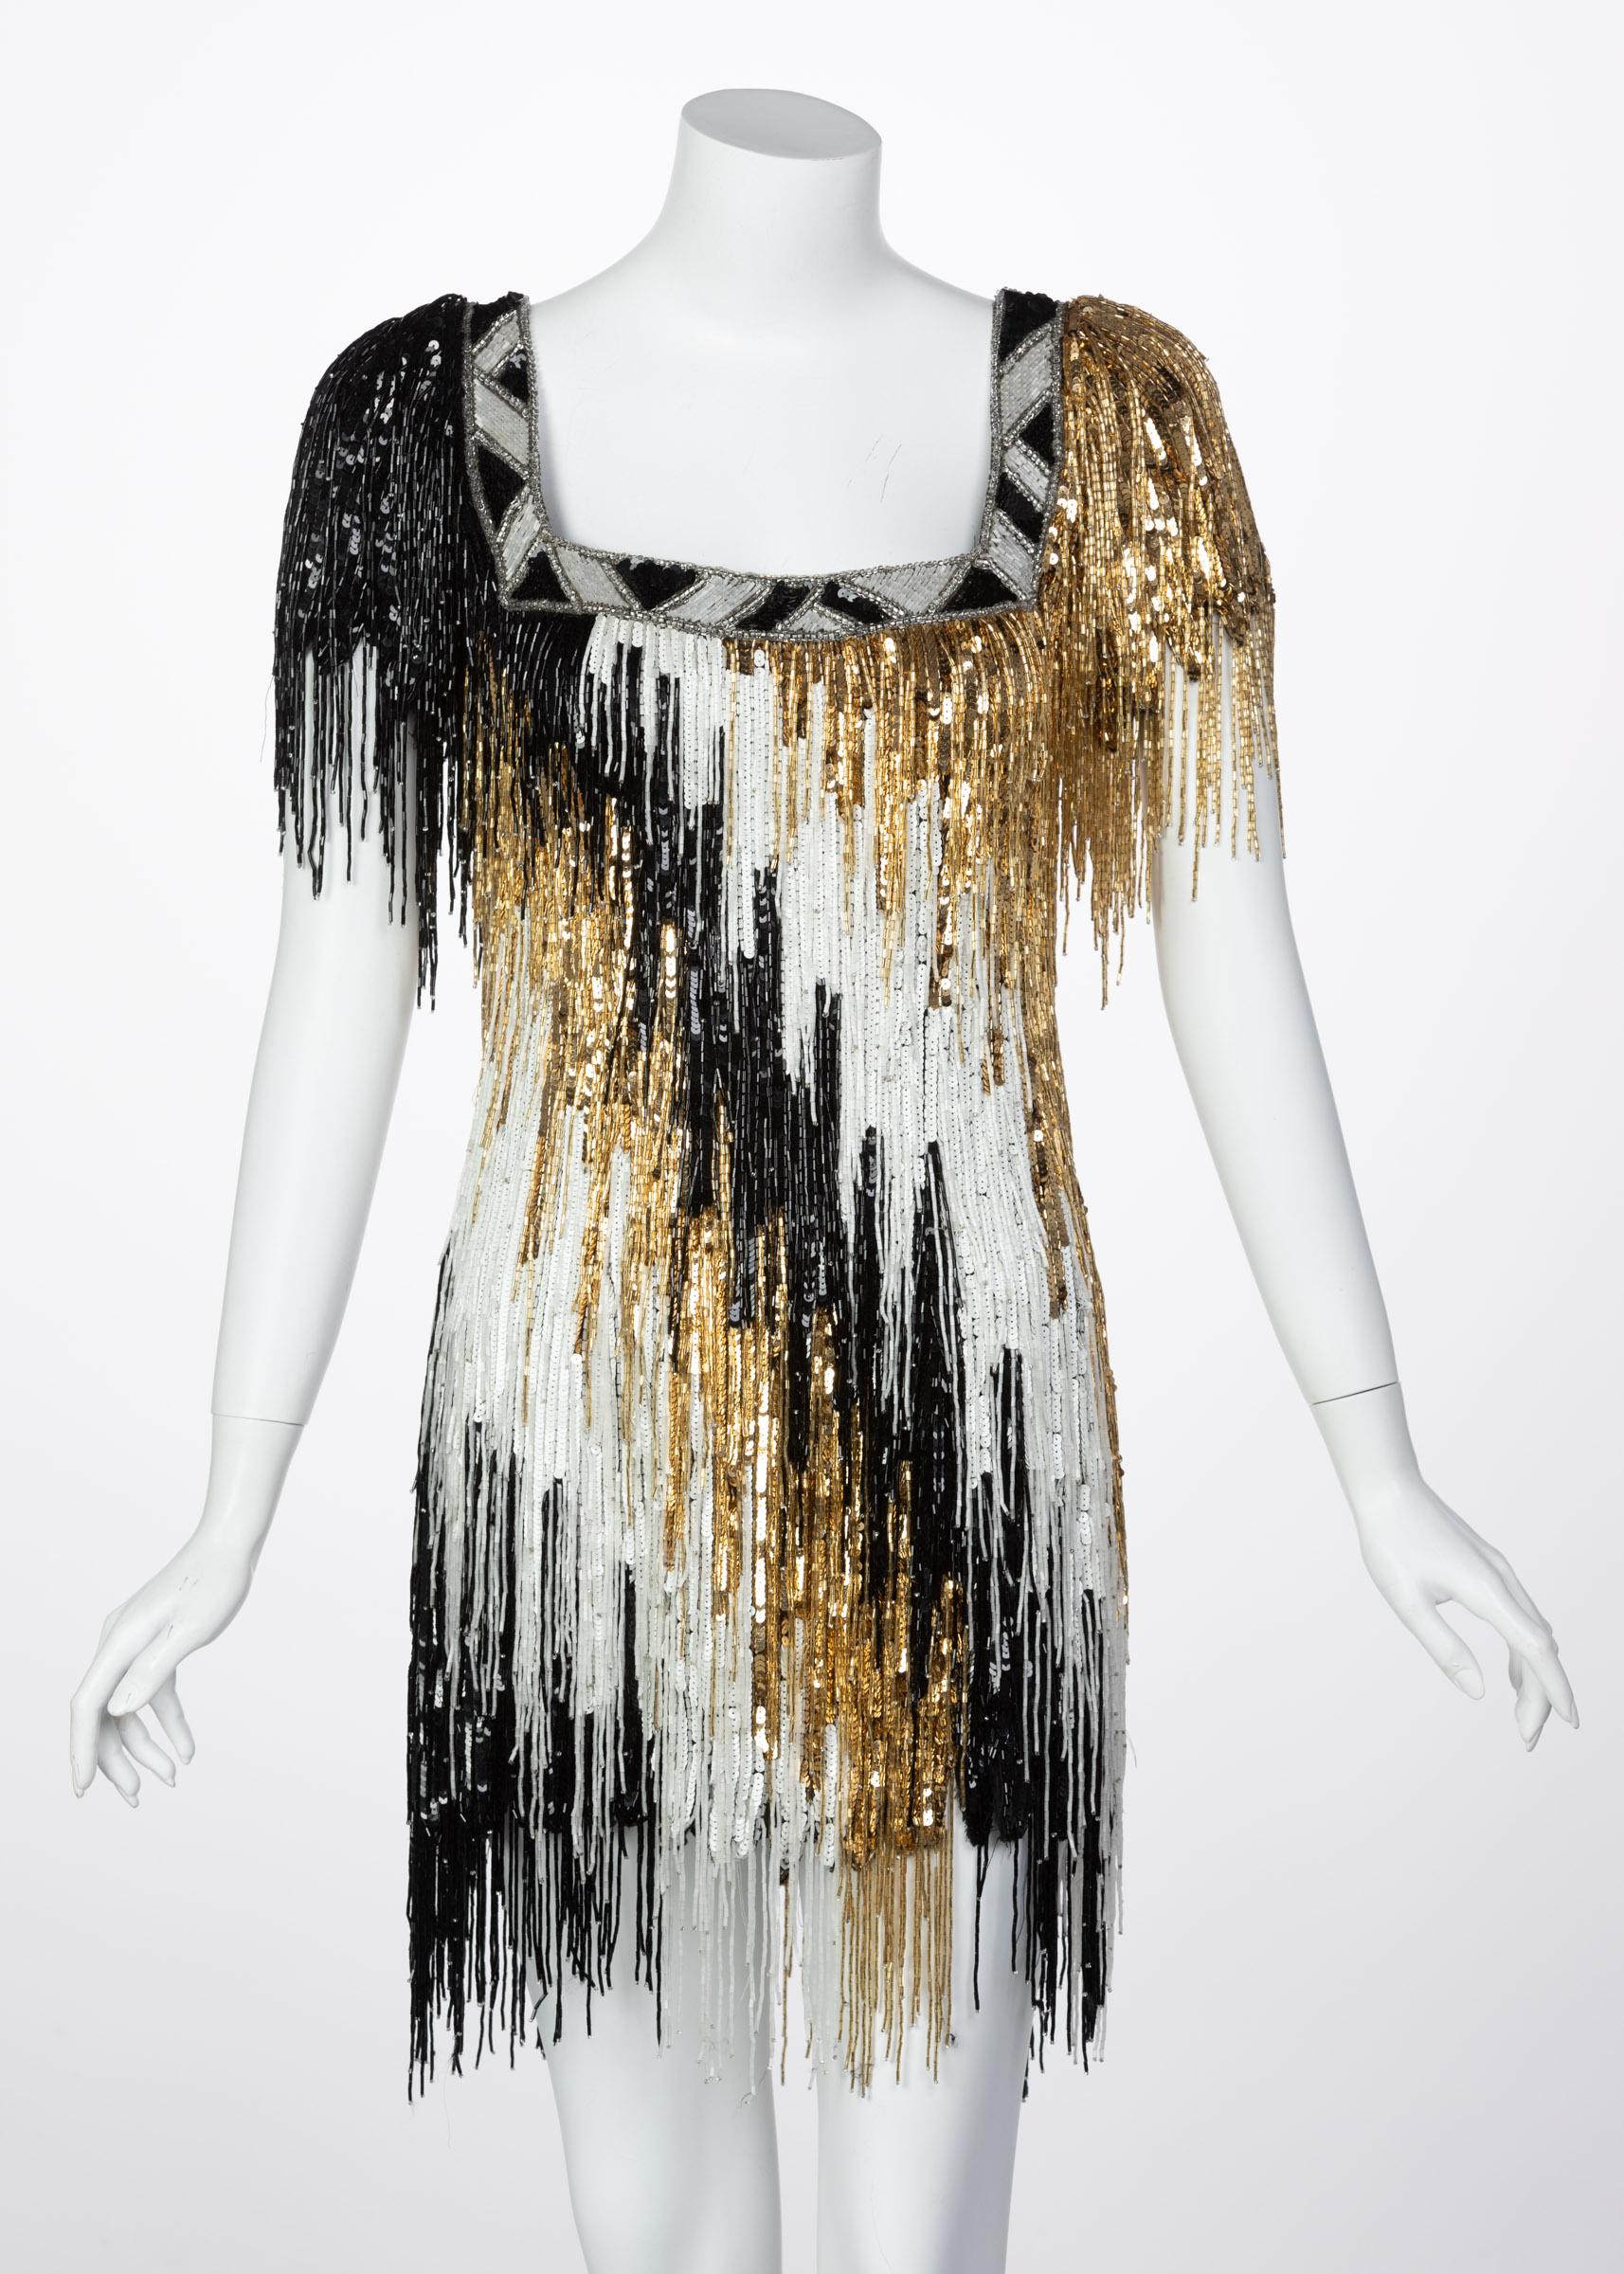 fashion Gold Lurex Metallic Fringe Dress Edging 2.5 inch craft 1Yard 